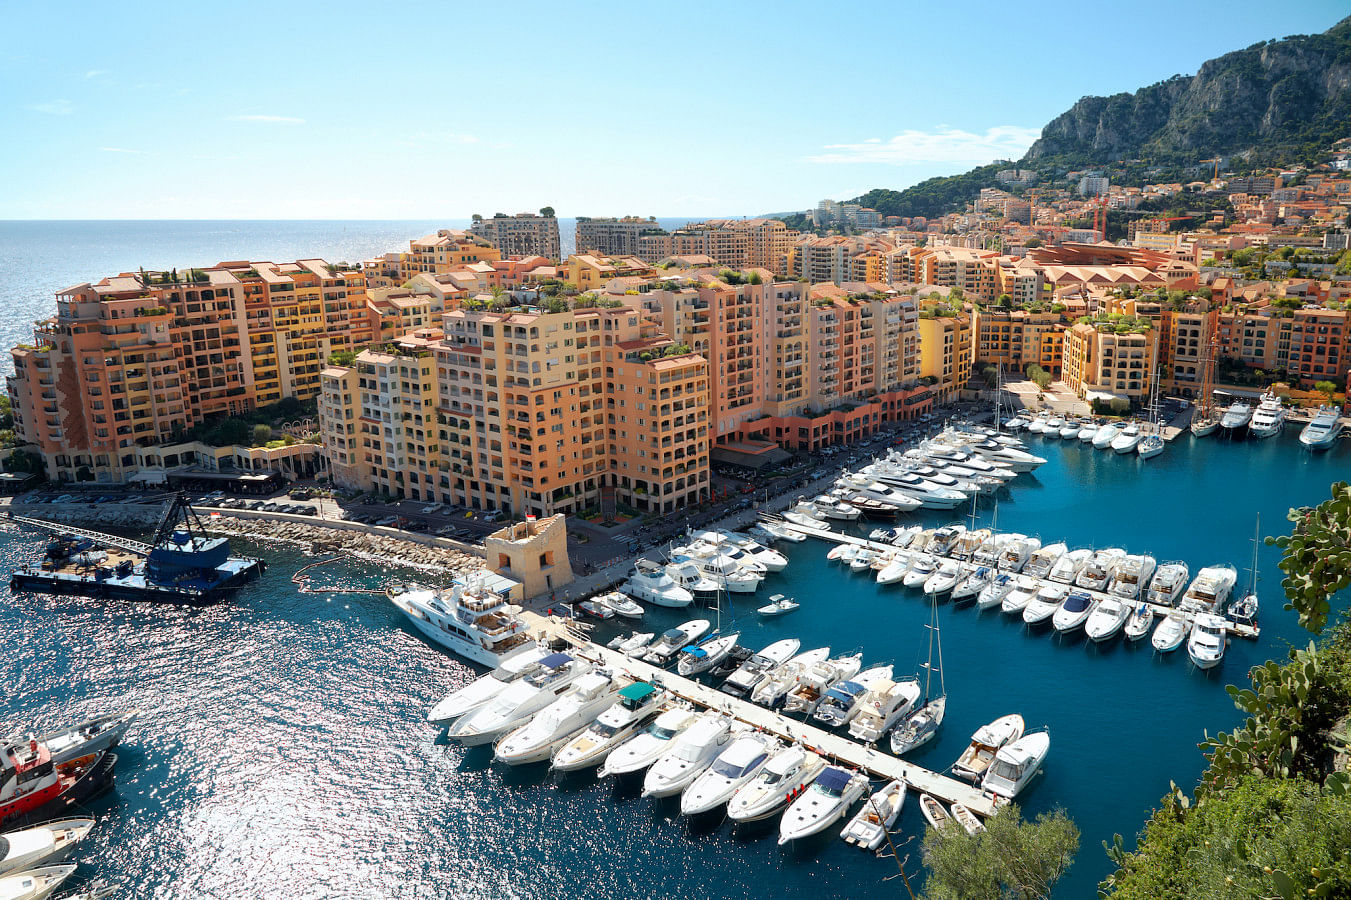 Hyr en båt i Monaco